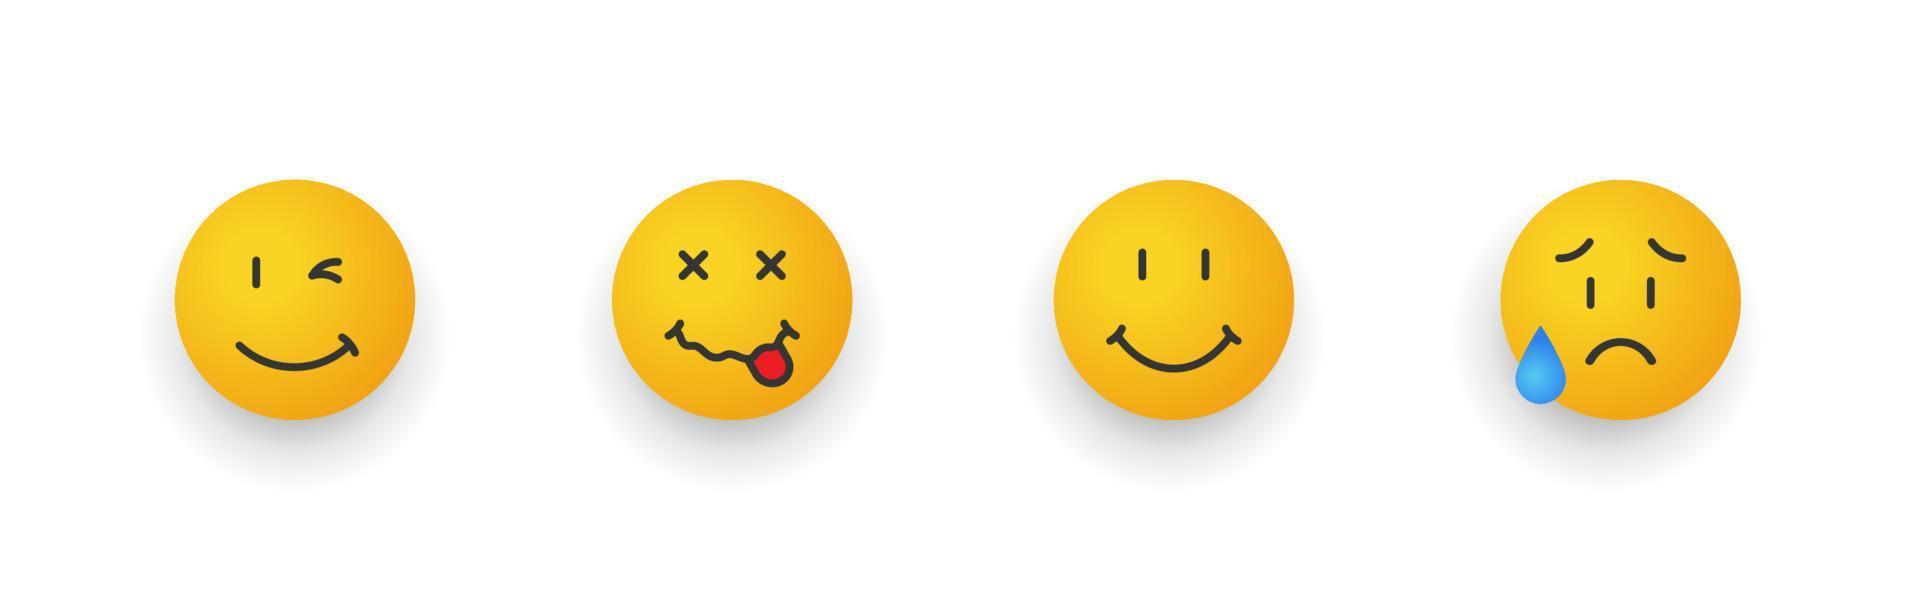 Lächeln-Symbole gesetzt. Cartoon-Emoji-Set. Smiley-Gesichter mit unterschiedlichen Emotionen. Vektor-Illustration vektor